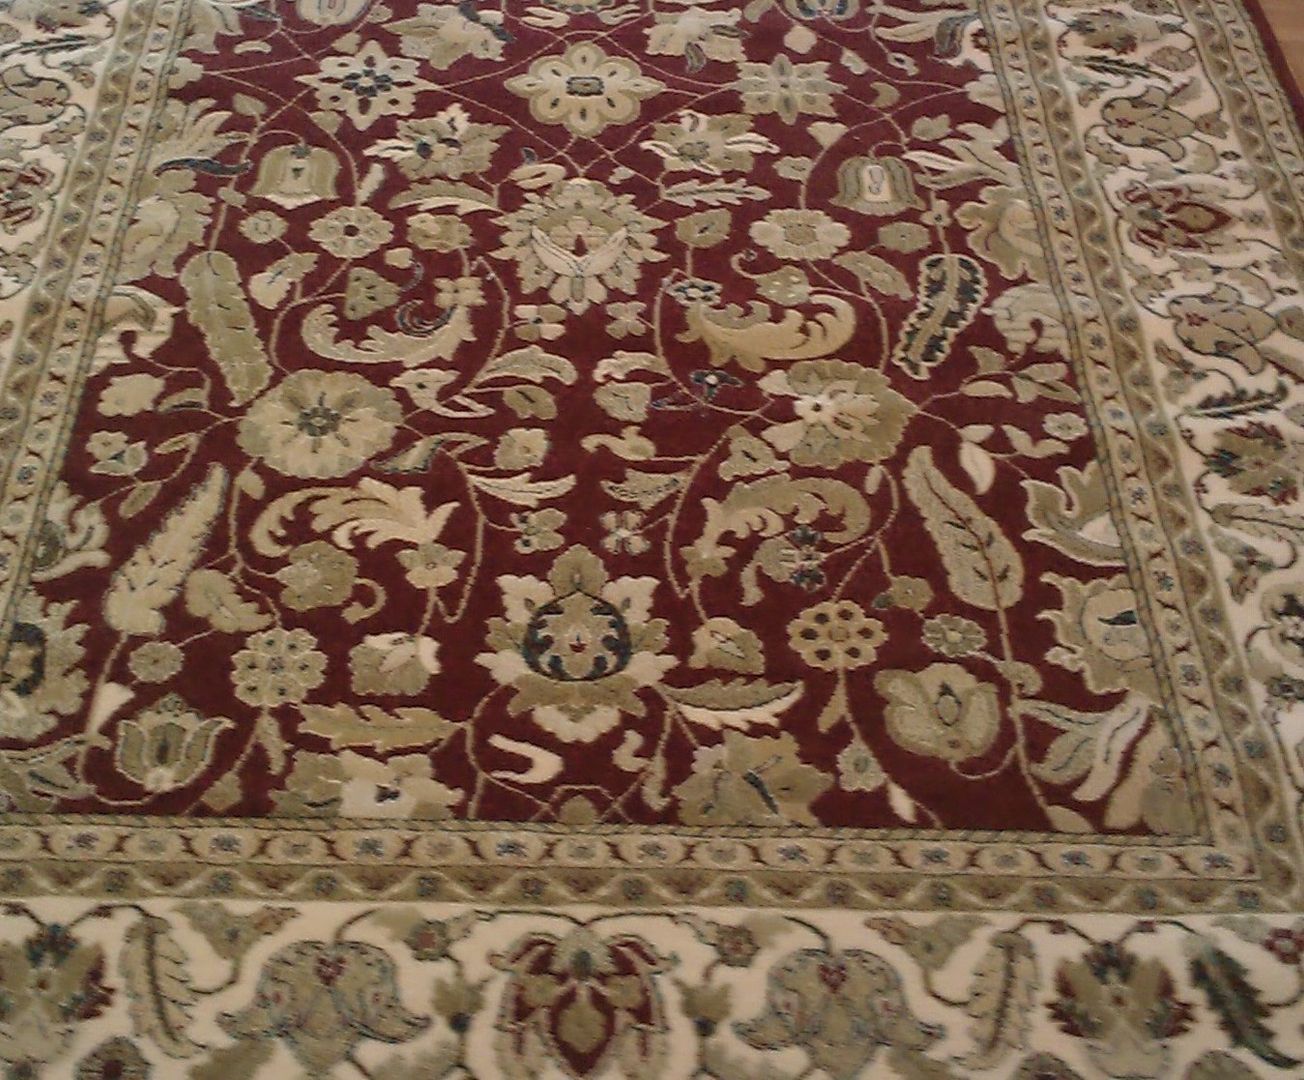 Alfombras Dekor, Carpetfil Alfombras, s.l. Carpetfil Alfombras, s.l. Floors Carpets & rugs